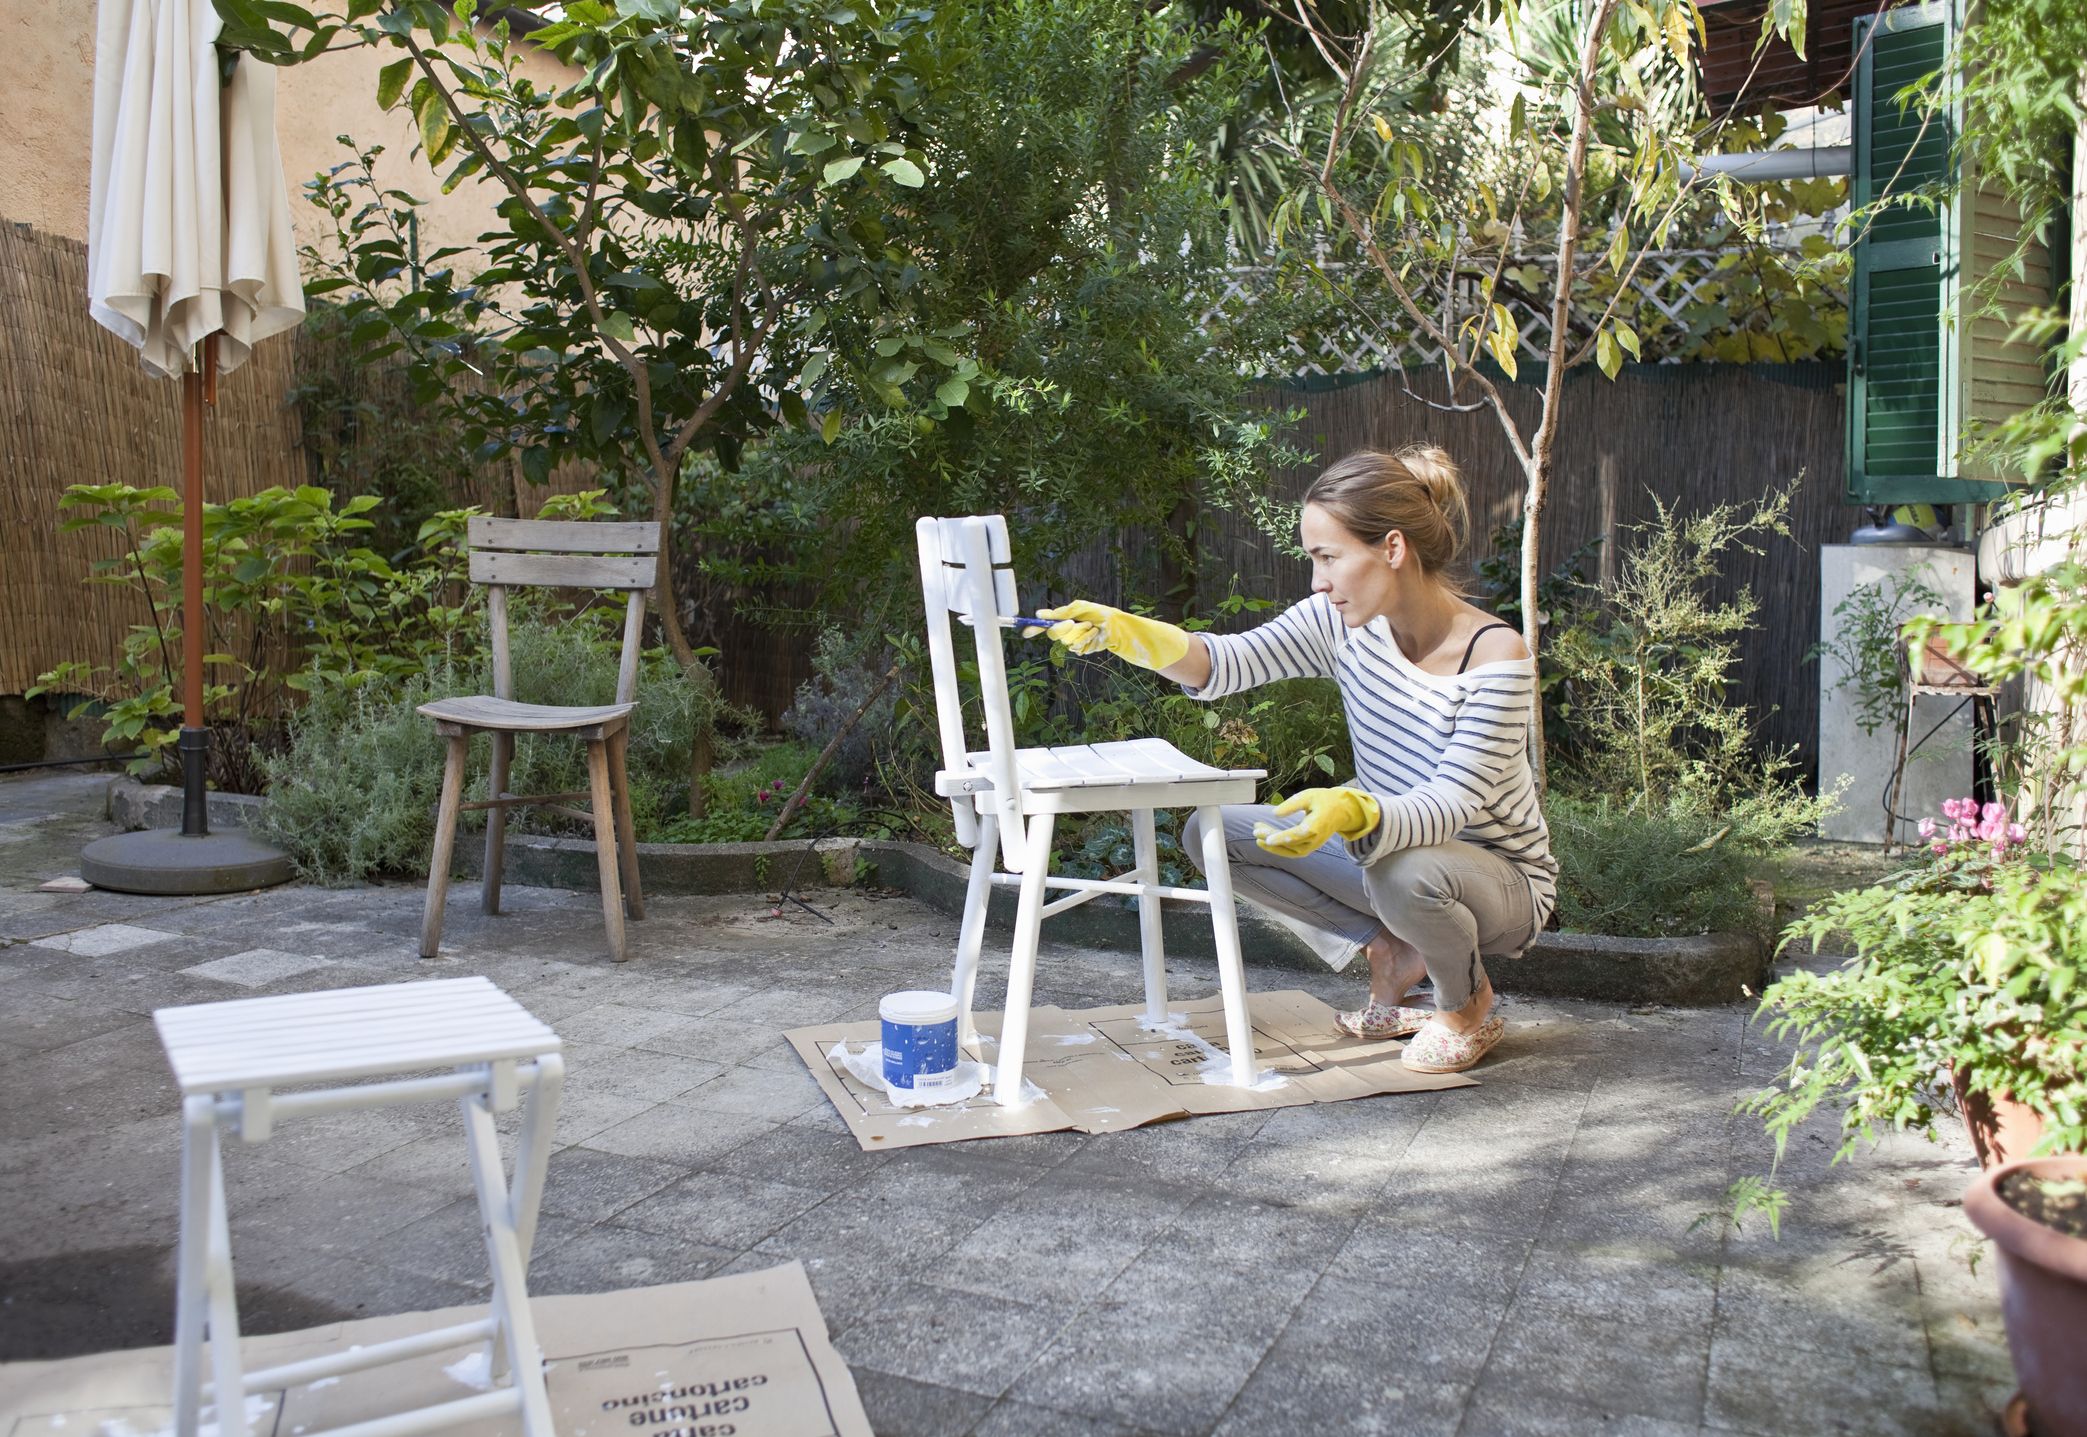 Cómo pintar los muebles - antes de empezar